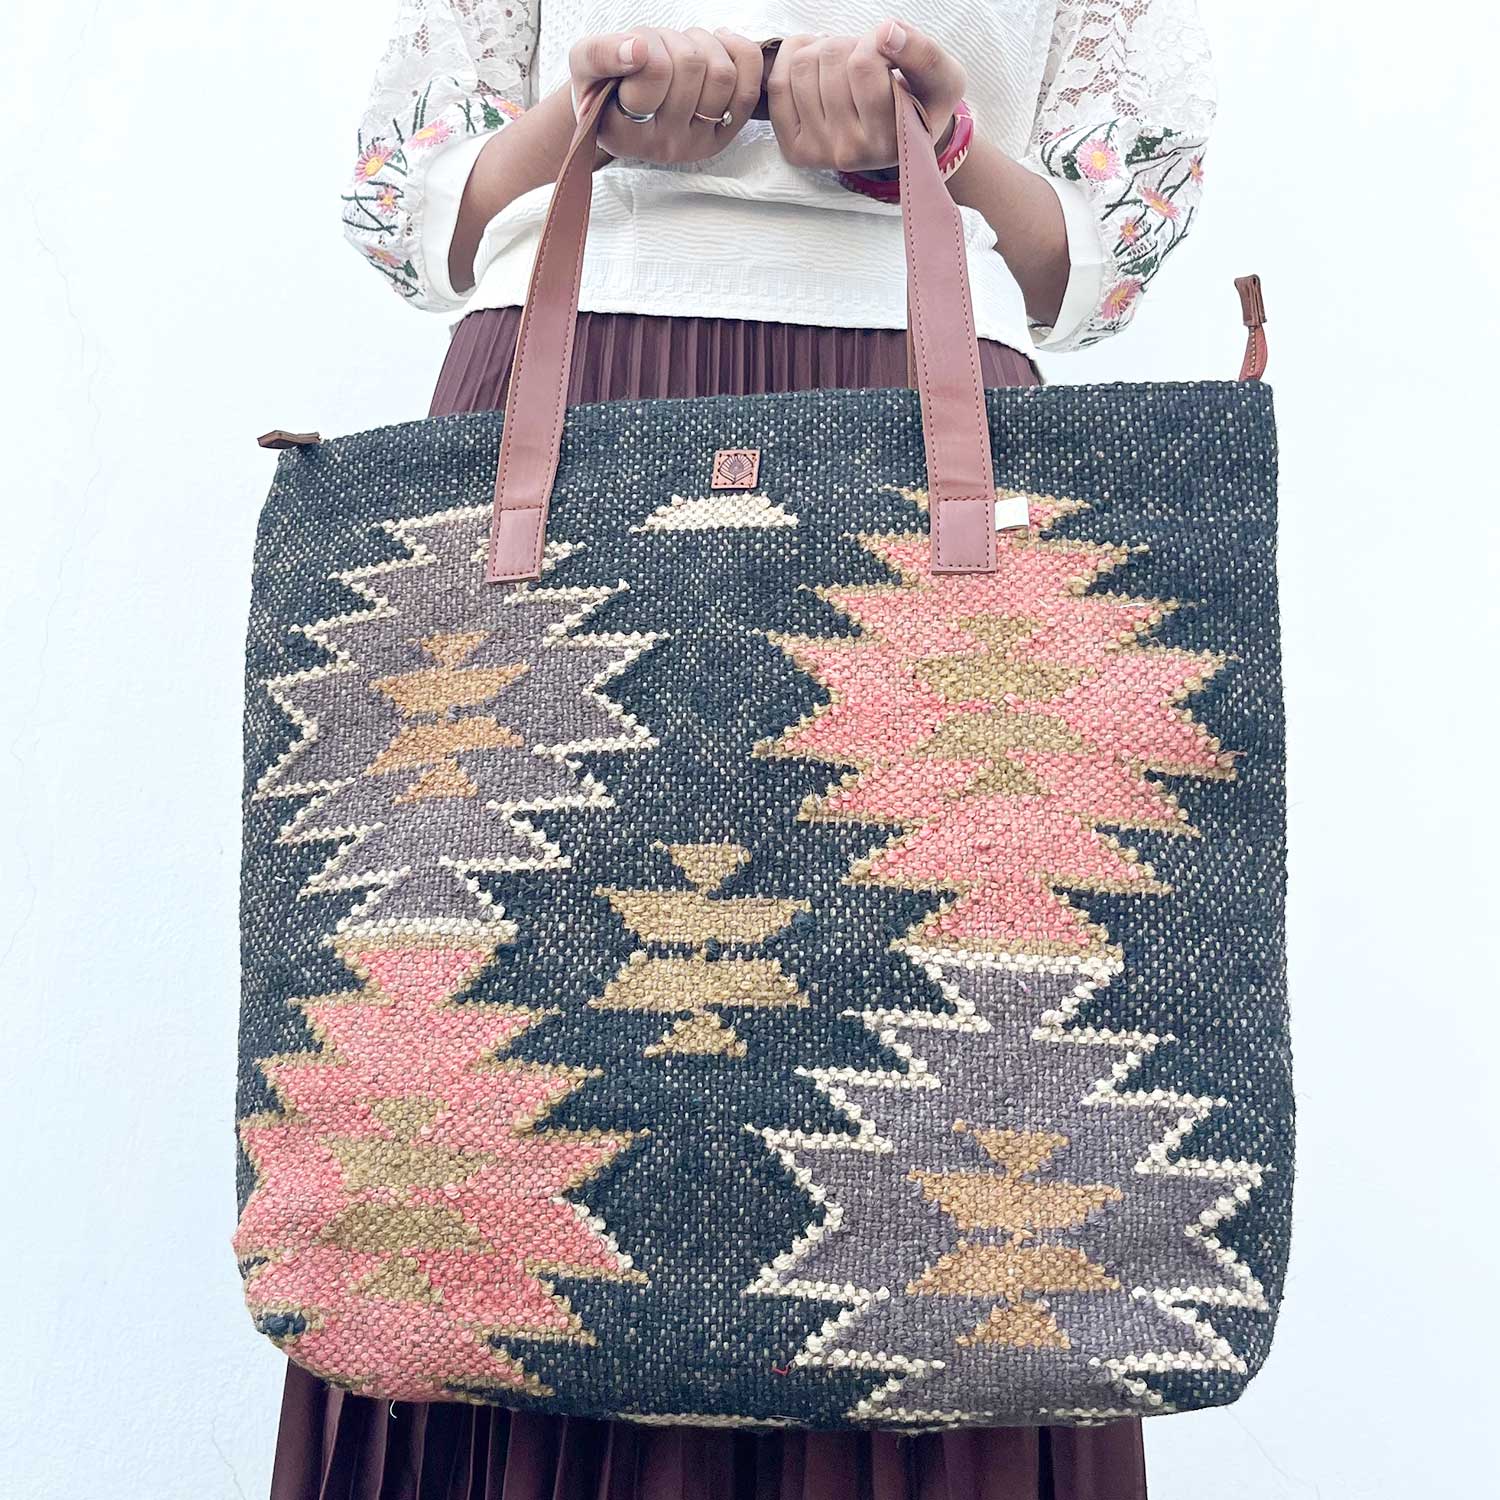 Aesthetic Fashion Kilim Jute & Cotton Handbag / Shoulder Bag - 16 x 15 x 5 inches | Peacoy